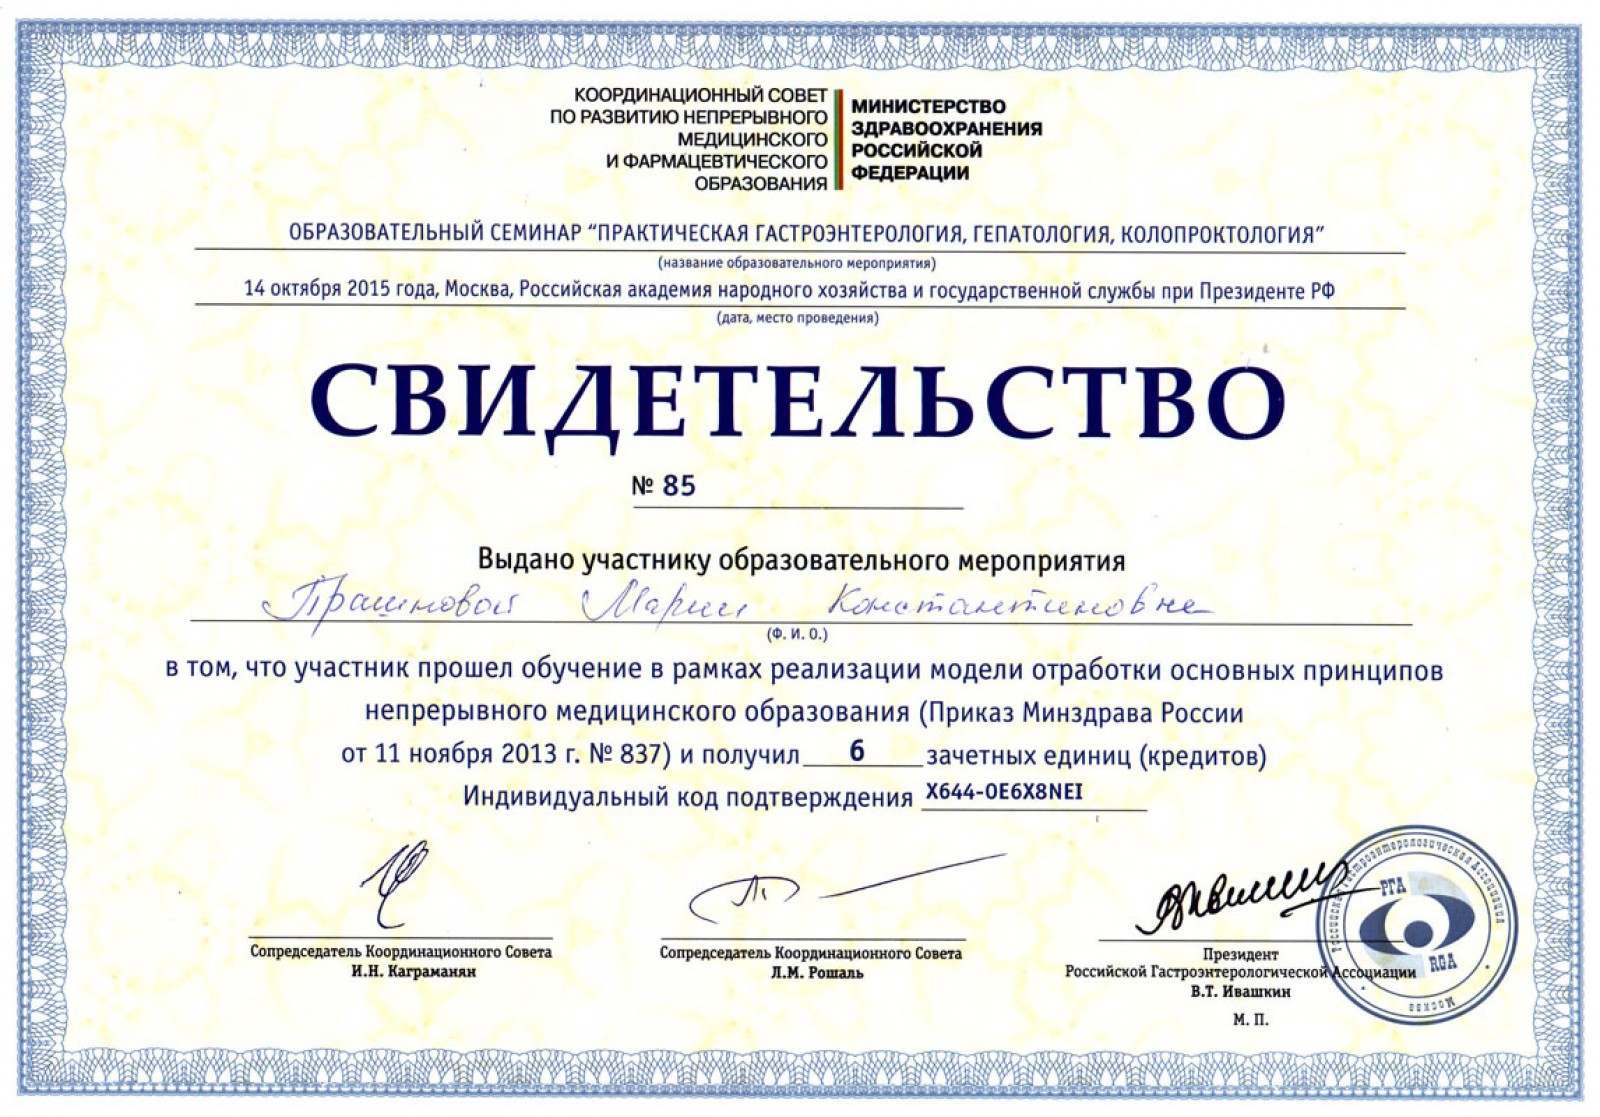 Сертификат по ковид